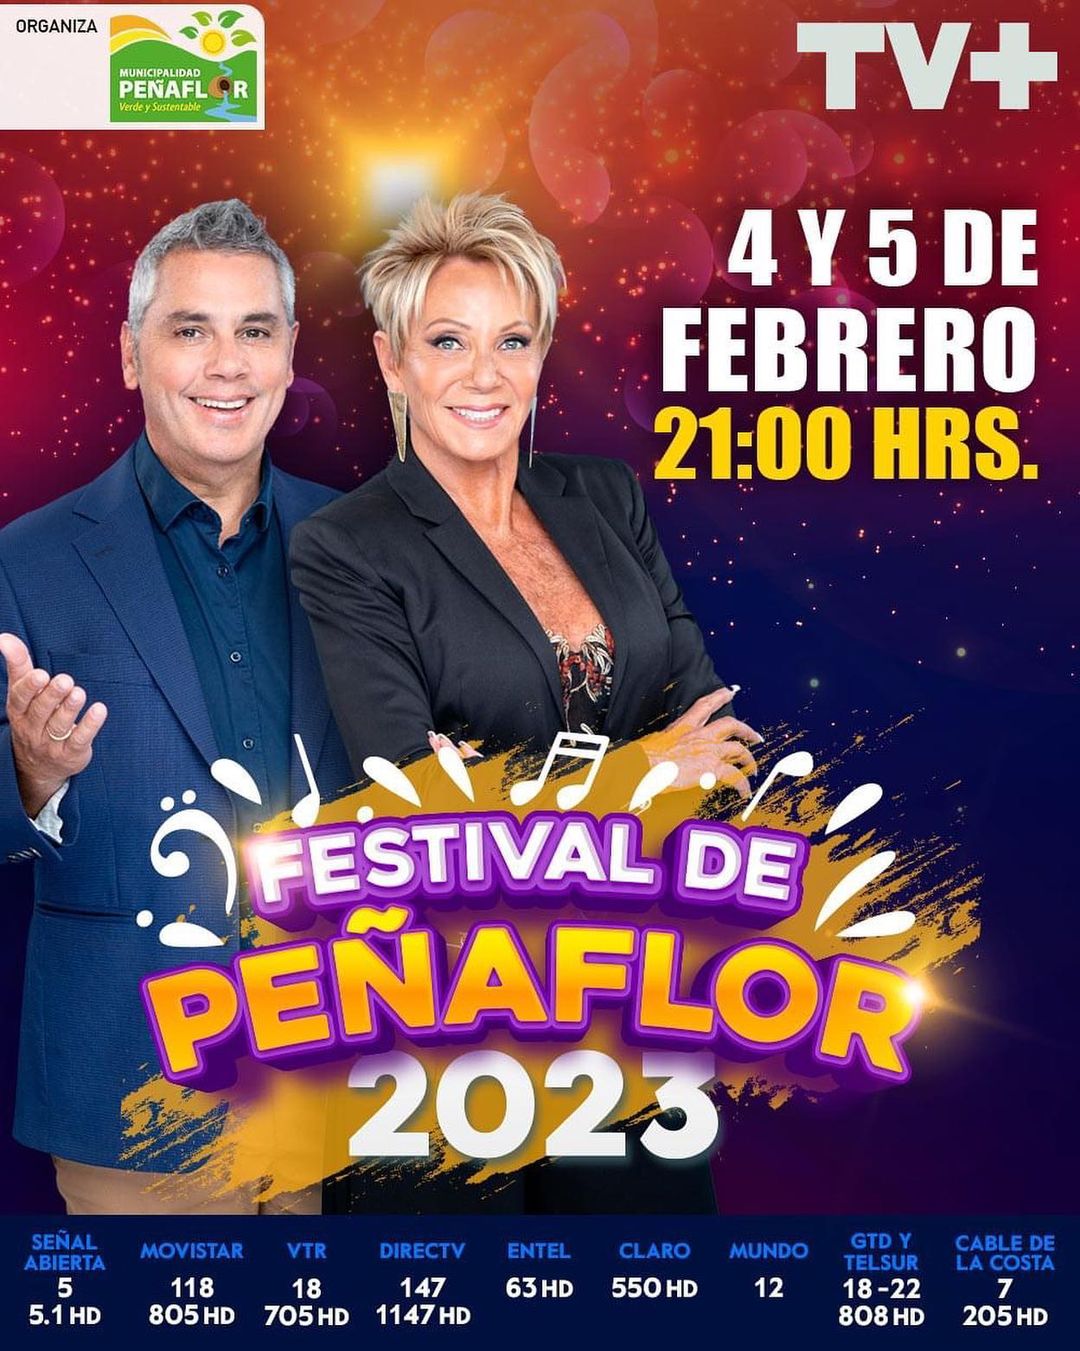 Festival De Peñaflor 2023 Animadores Raquel Argandoña José Miguel Viñuela TV+